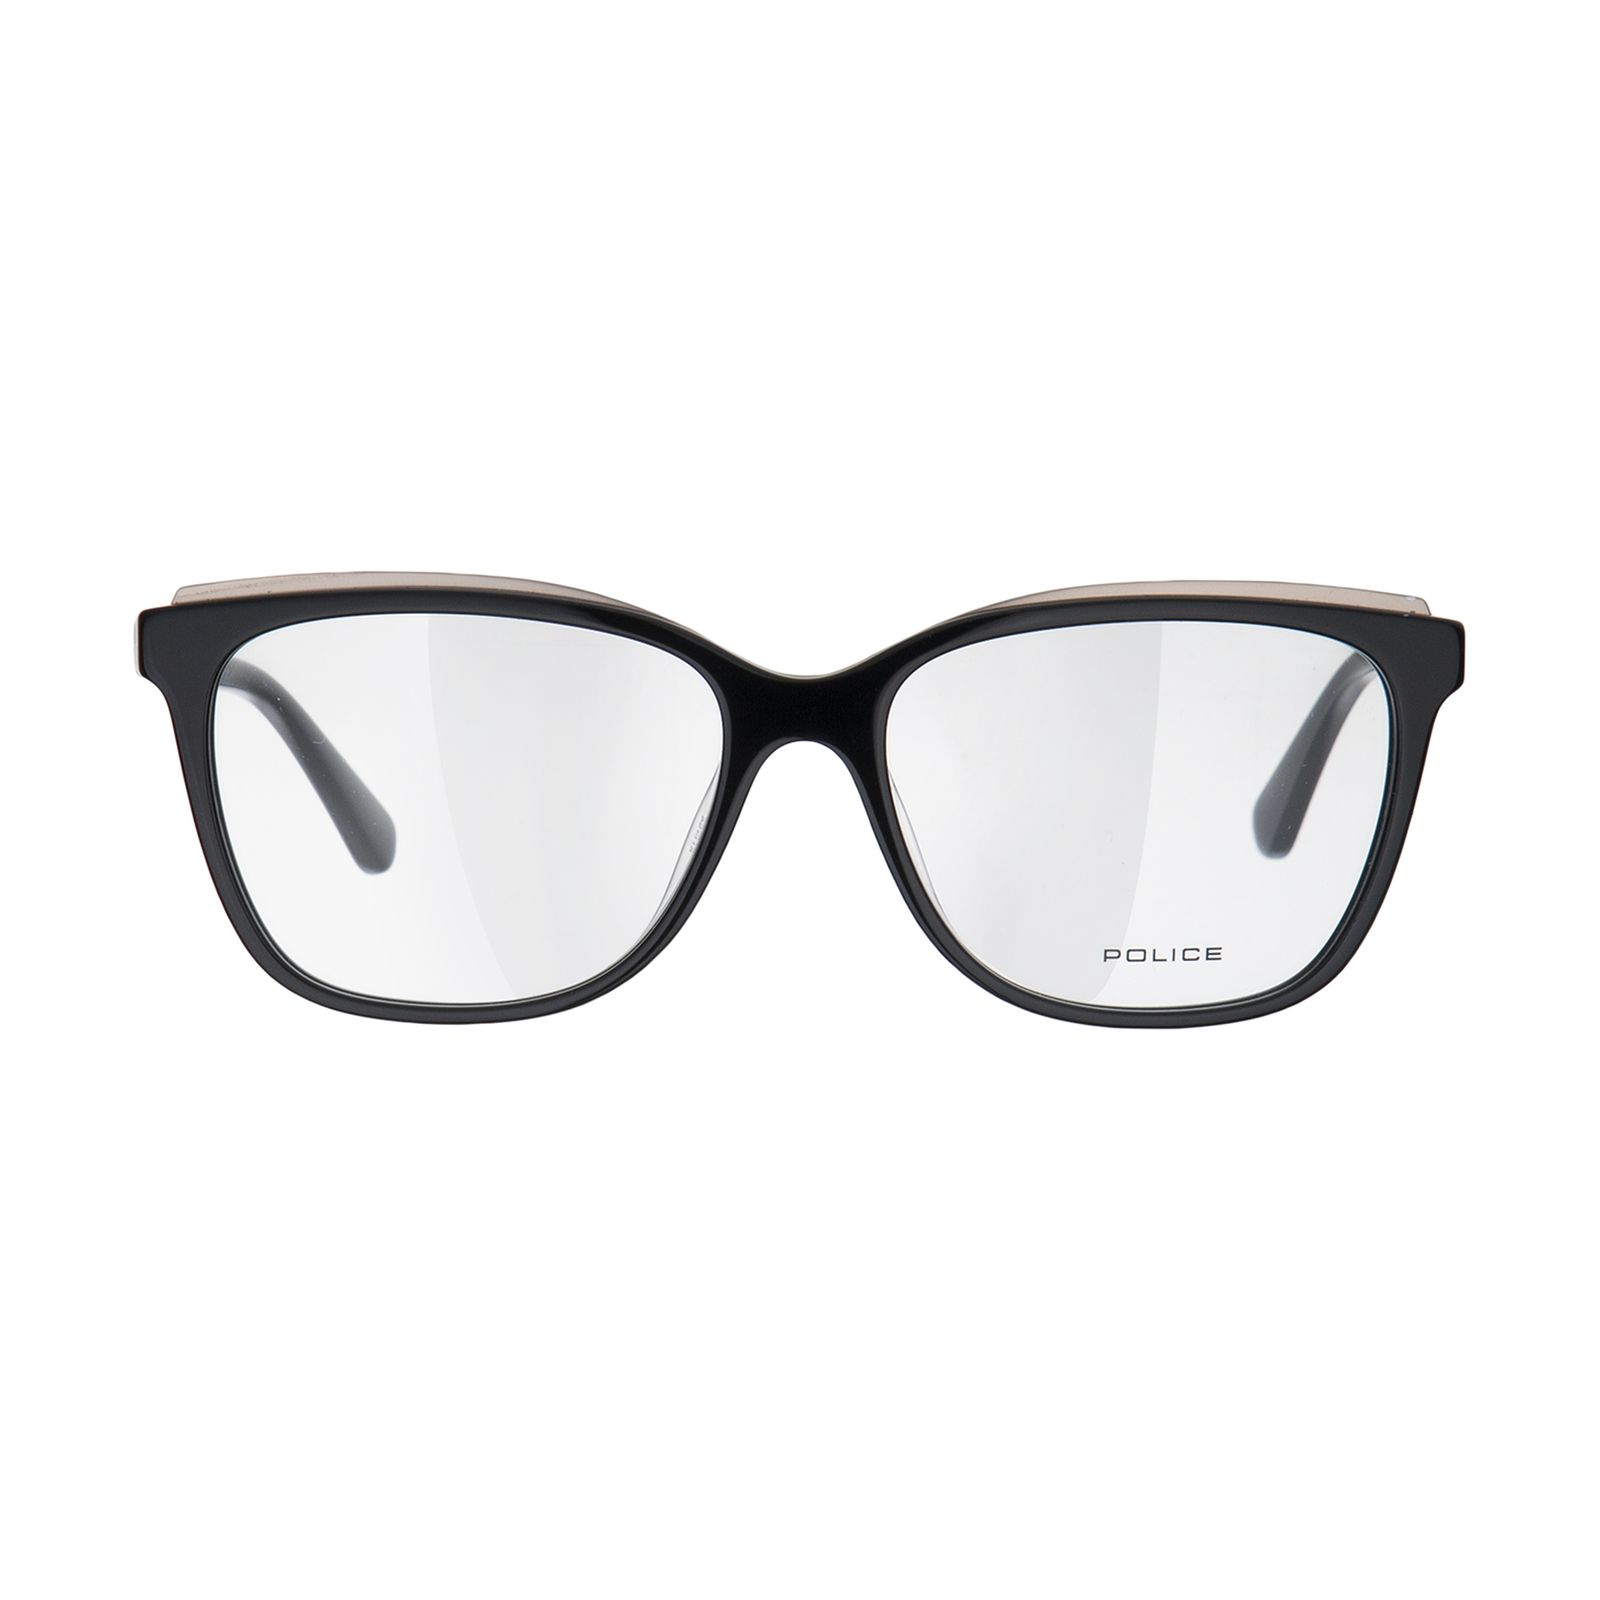 فریم عینک طبی زنانه پلیس مدل VPL816-0700